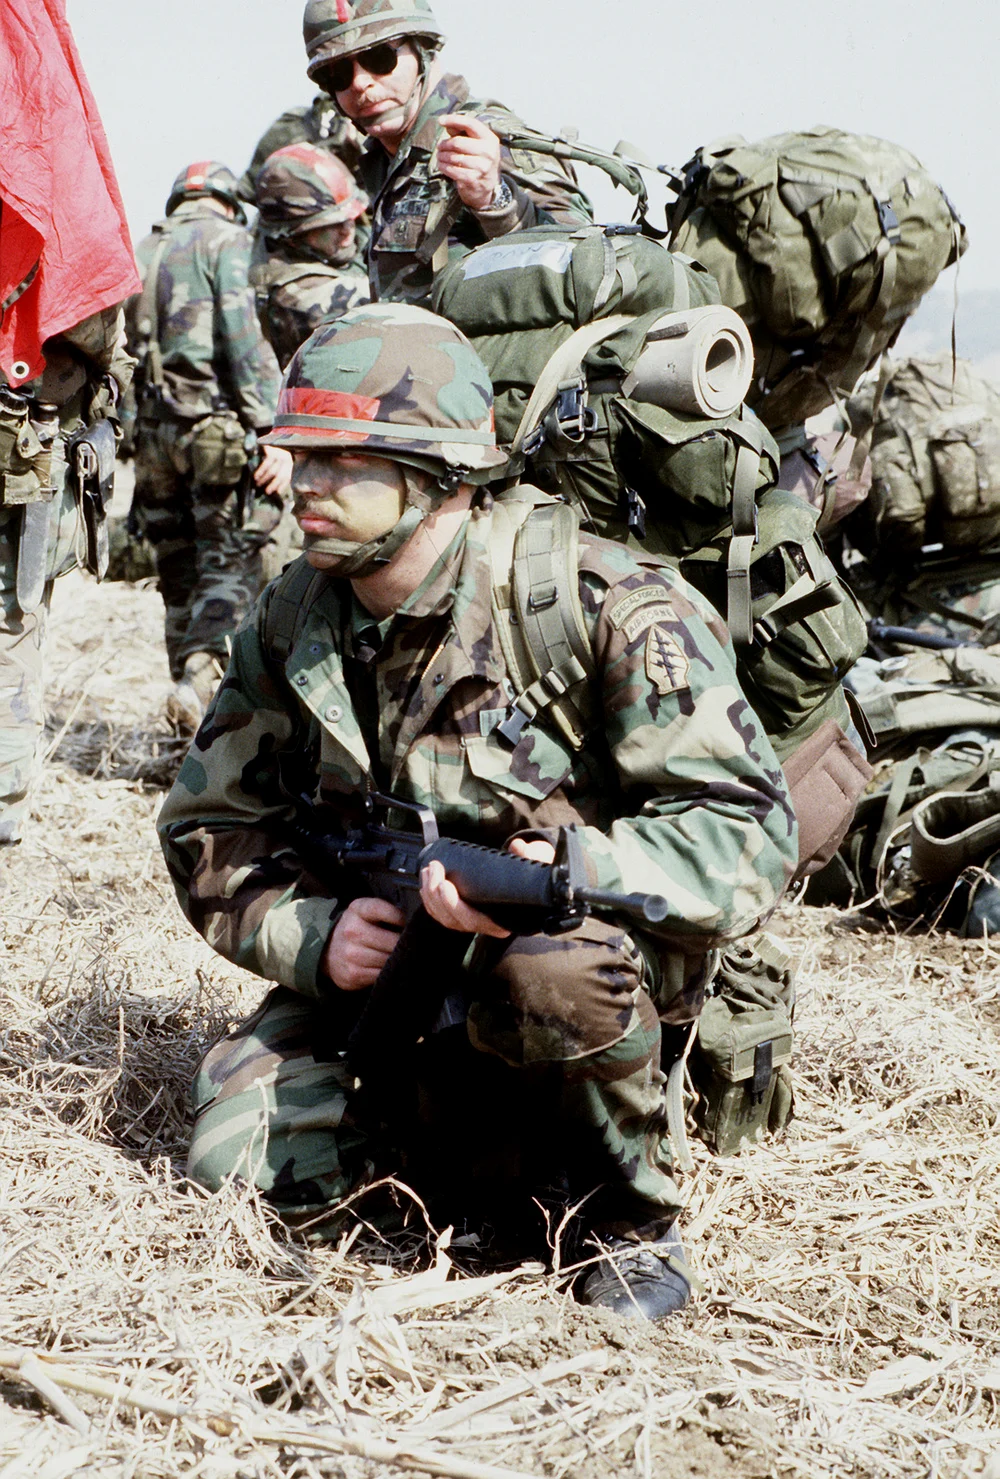 到了80年代，美军计划列装新的背包装具替换掉ALICE背囊，图为1985年在韩国参加“TEAM SPIRIRT 85'”演习任务的1st SFG特战队员，身背当时还在测试的L.C.S.-84型背包